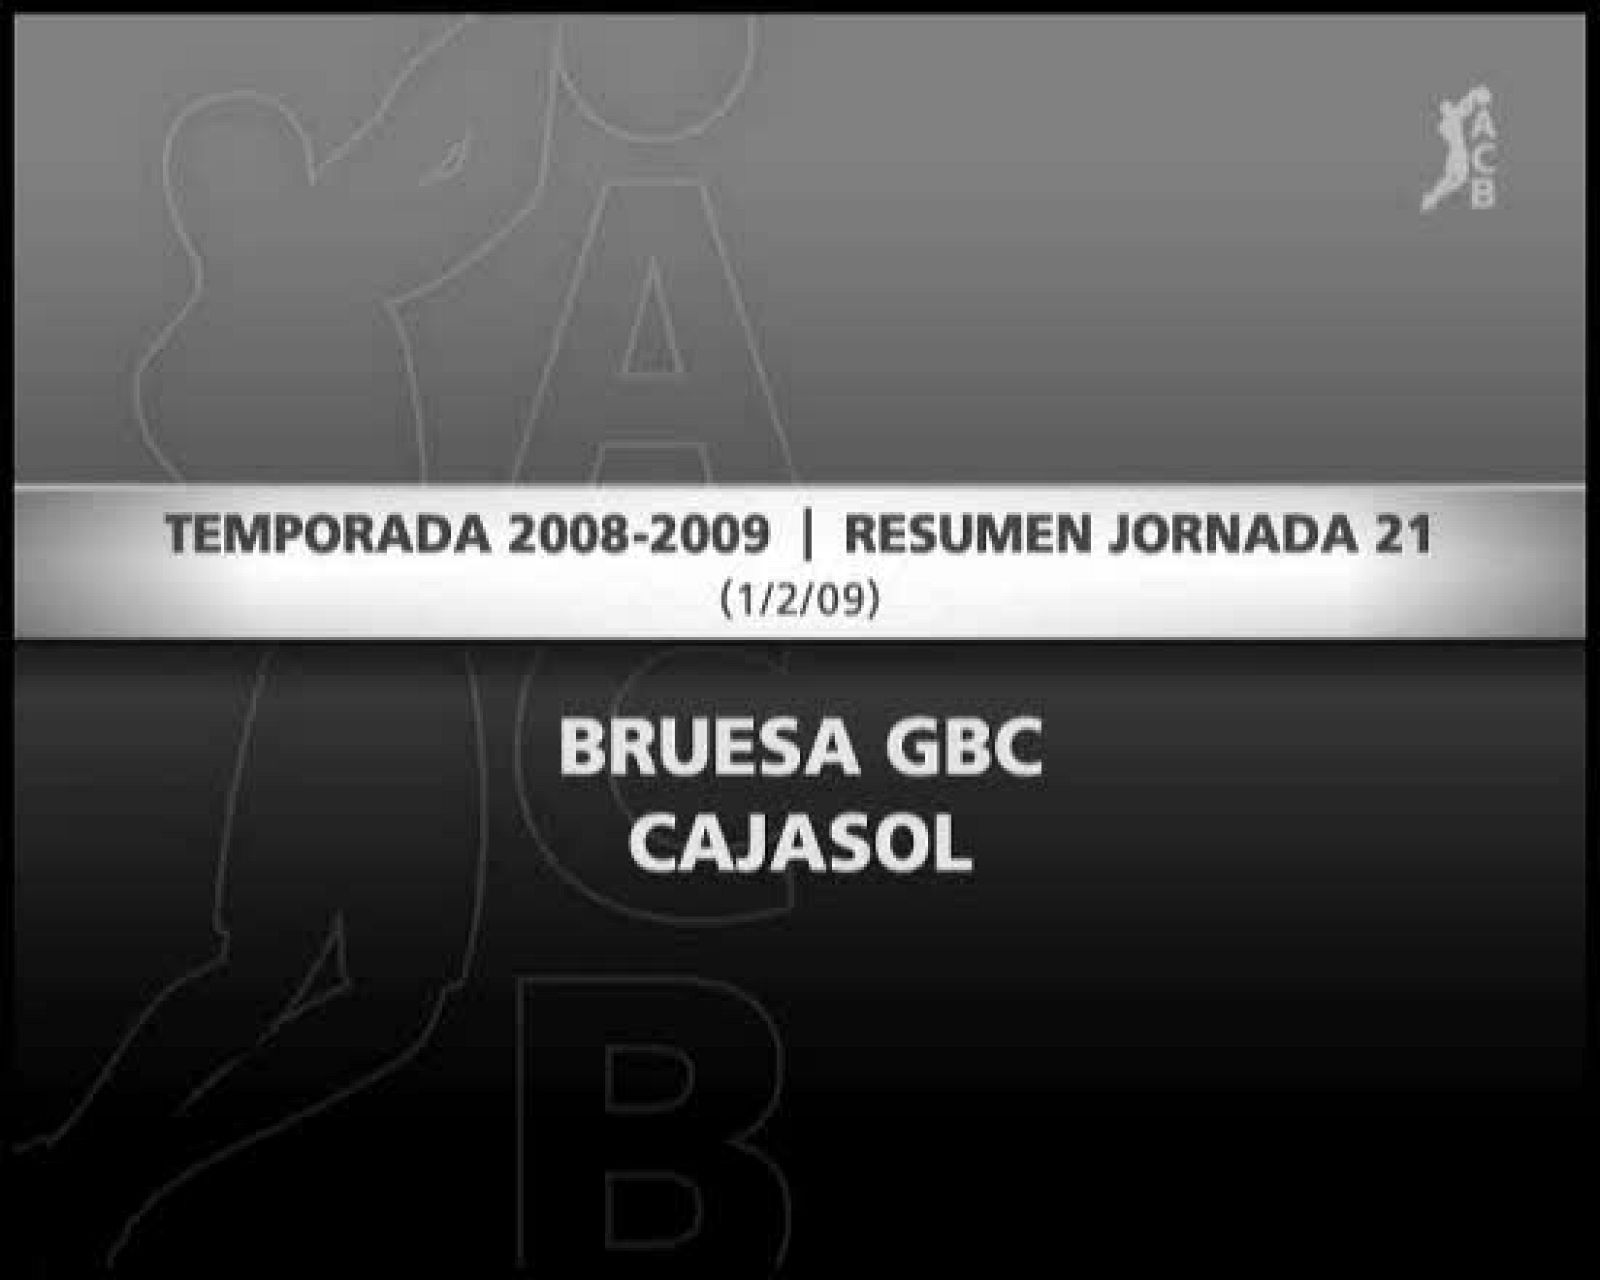 Bruesa GBC 63-70 Cajasol Sevilla